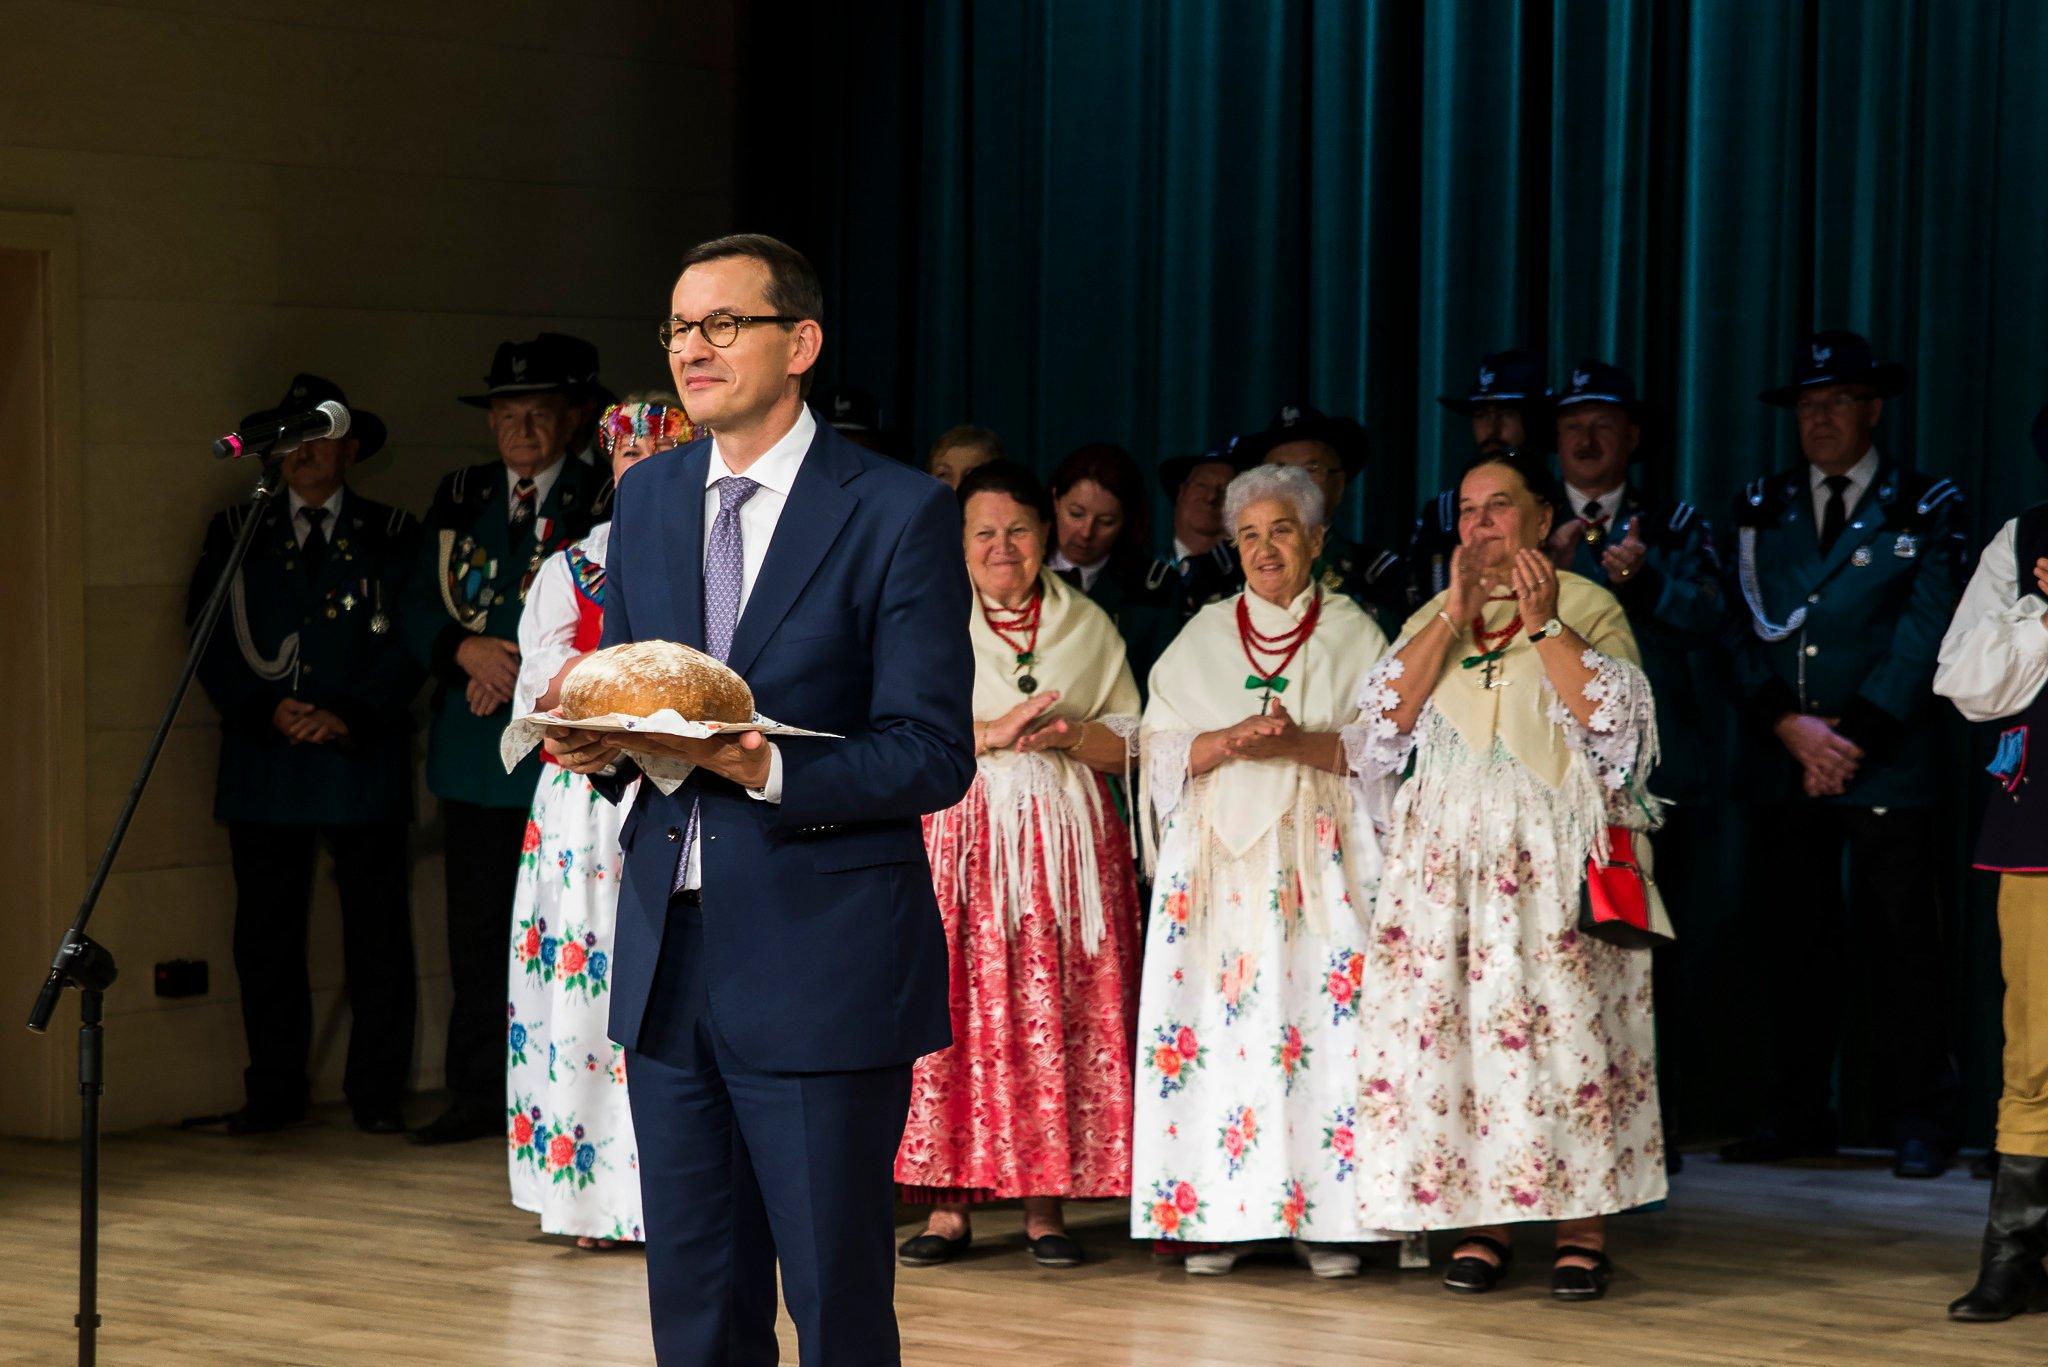 premier Morawiecki stoi na scenie z chlebem w ręce, w tle kobiety w starszym wieku, w strojach ludowych